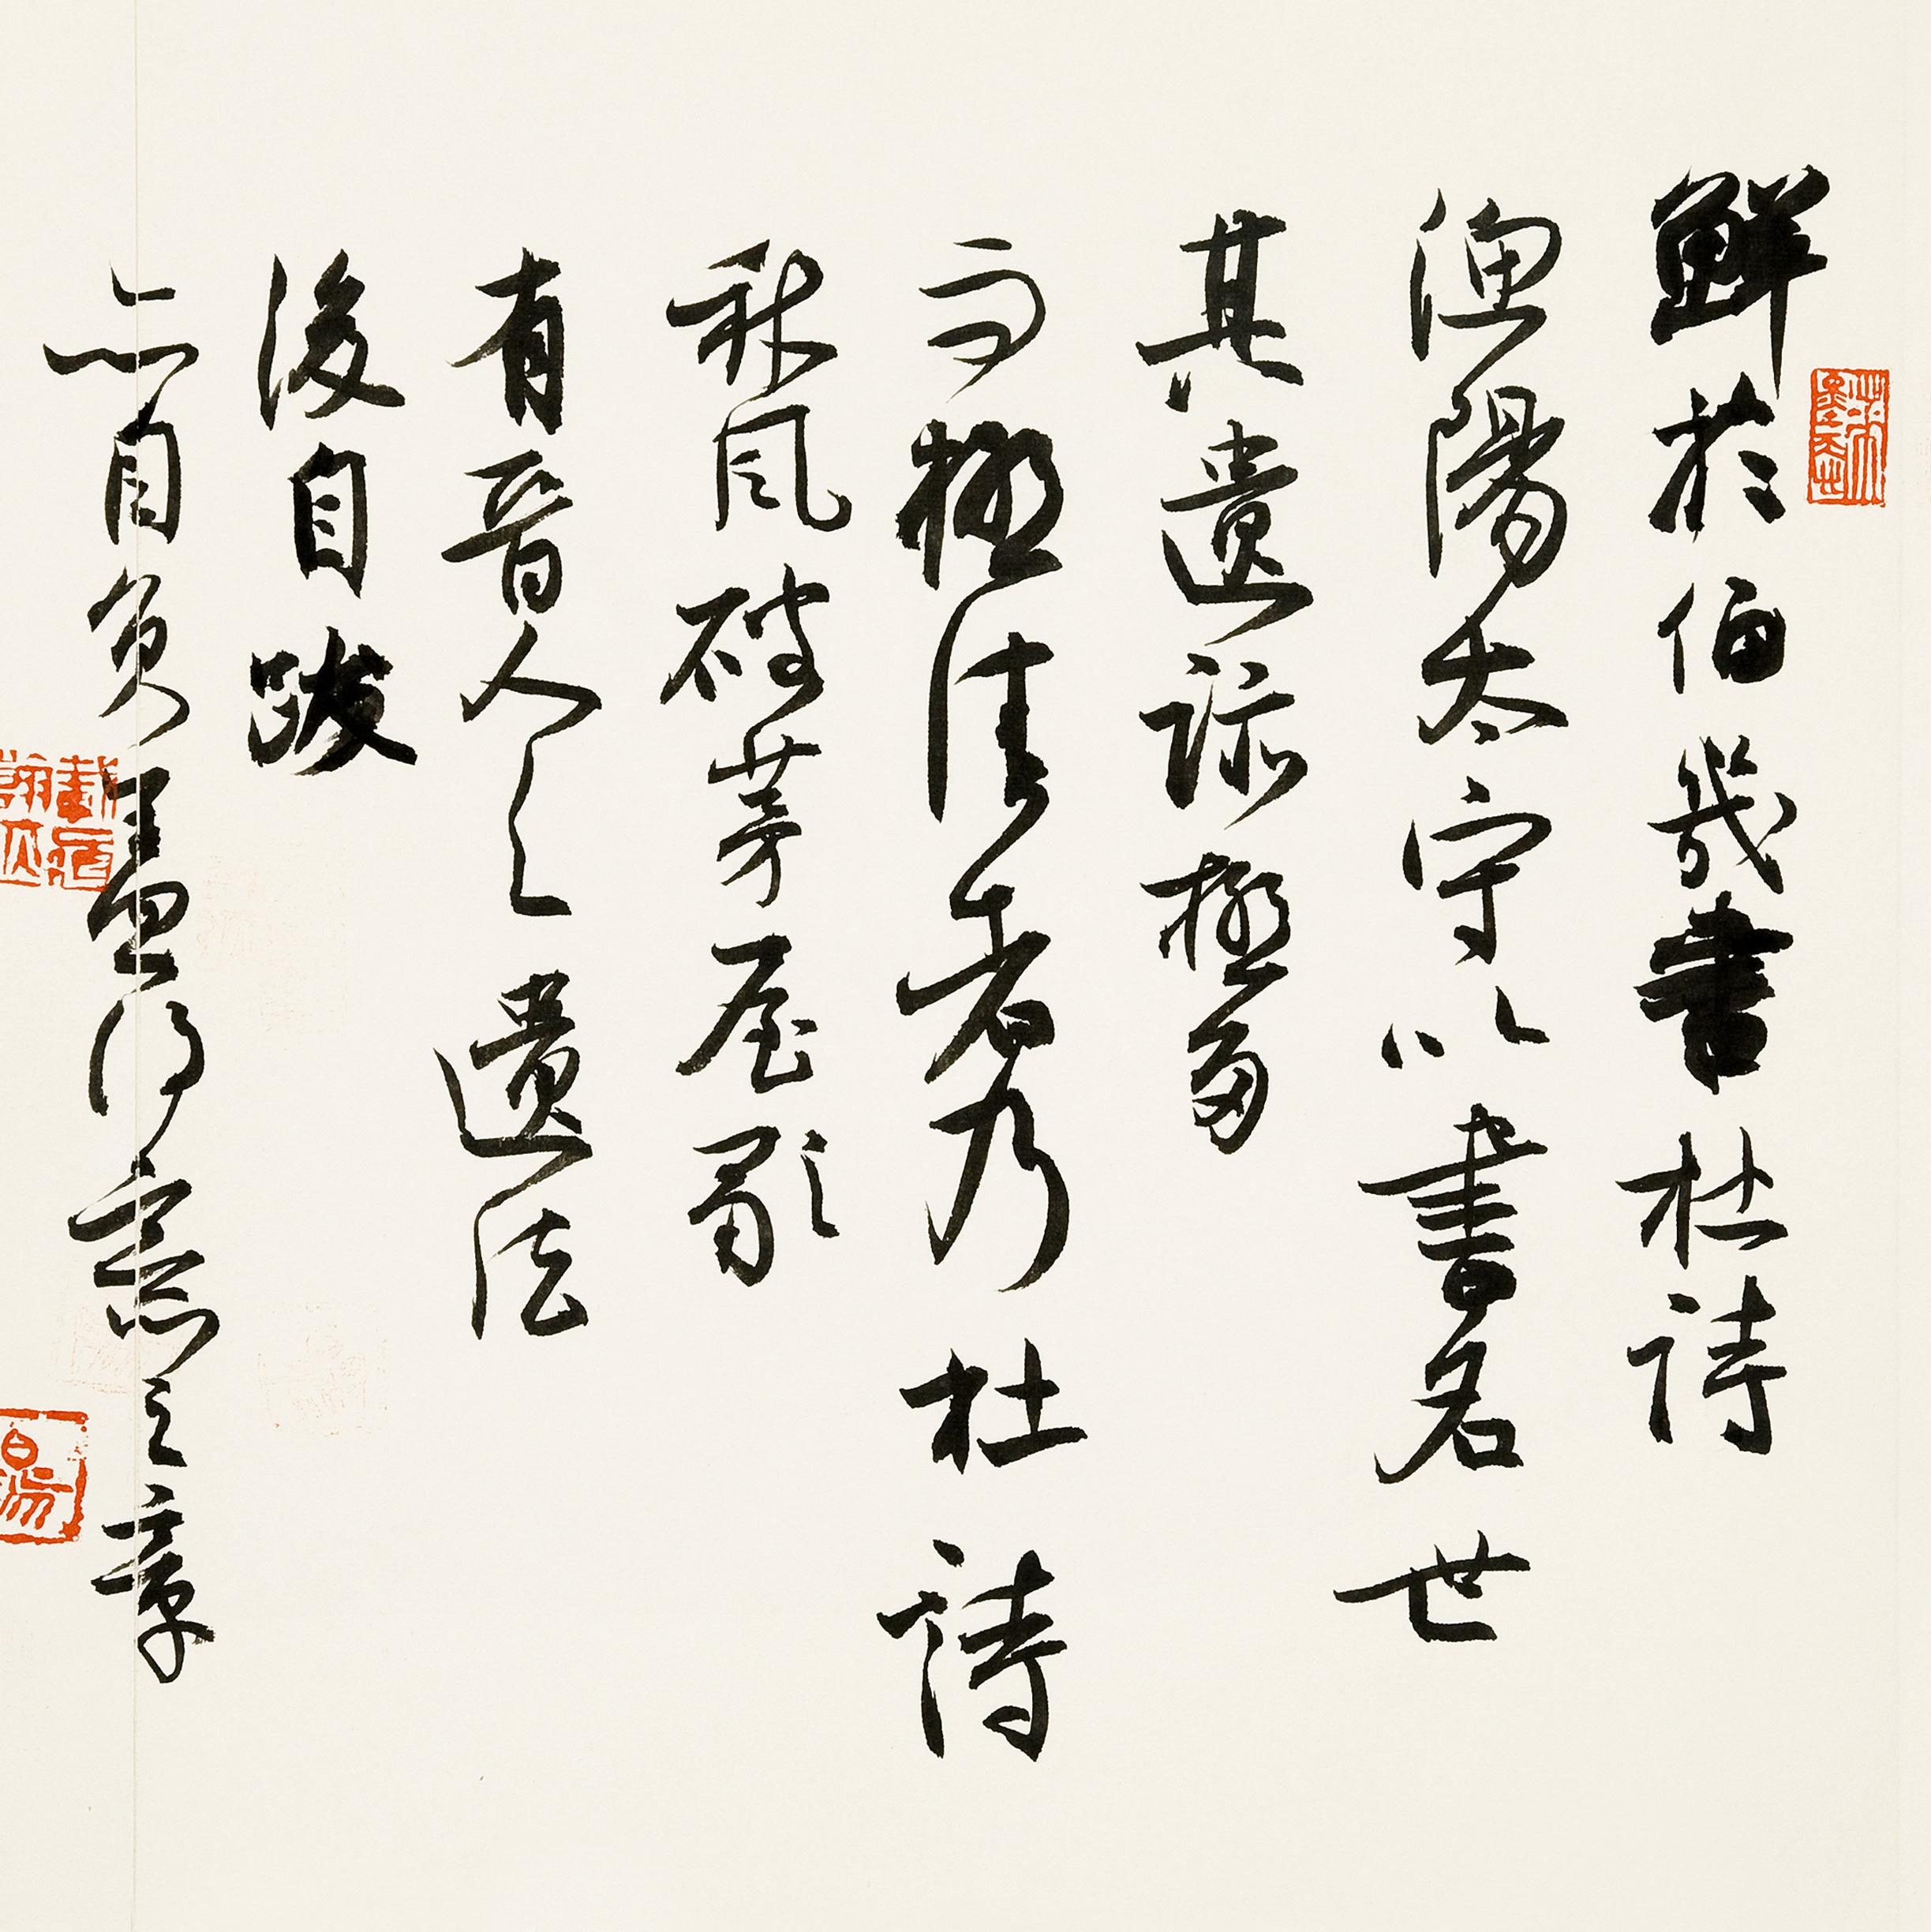 井上有一的 墨渊祭 在上海见证日本汉字书写奇迹 艺术评论 澎湃新闻 The Paper